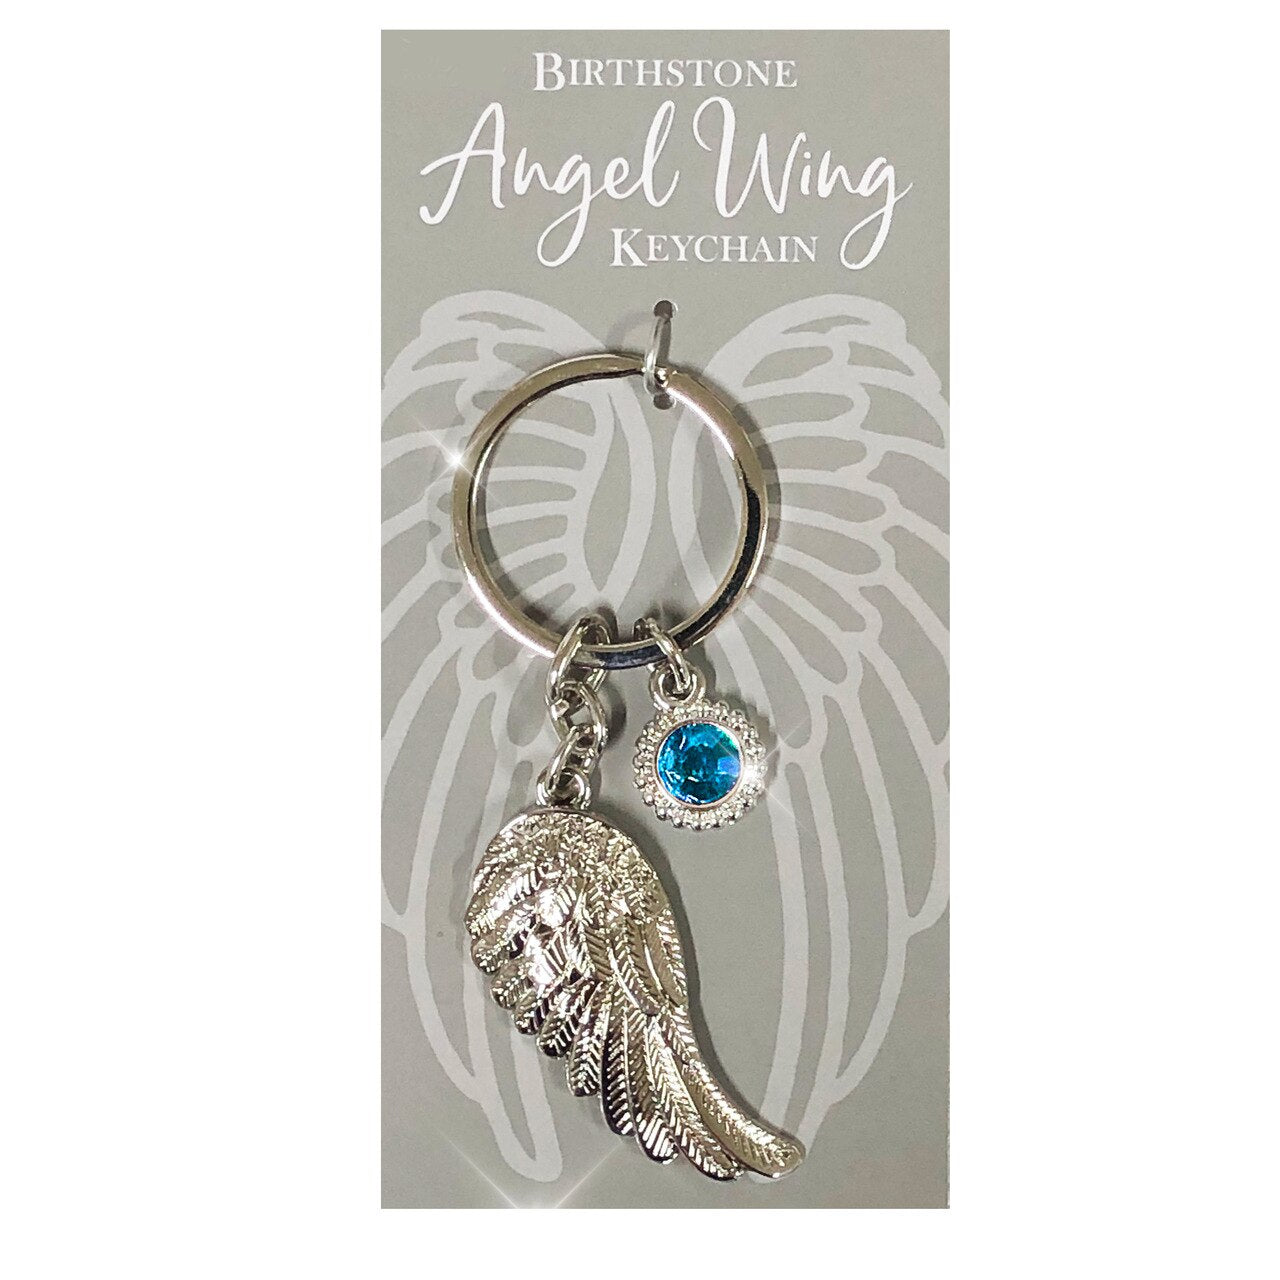 Birthstone Angel Wing Silver Keychain.